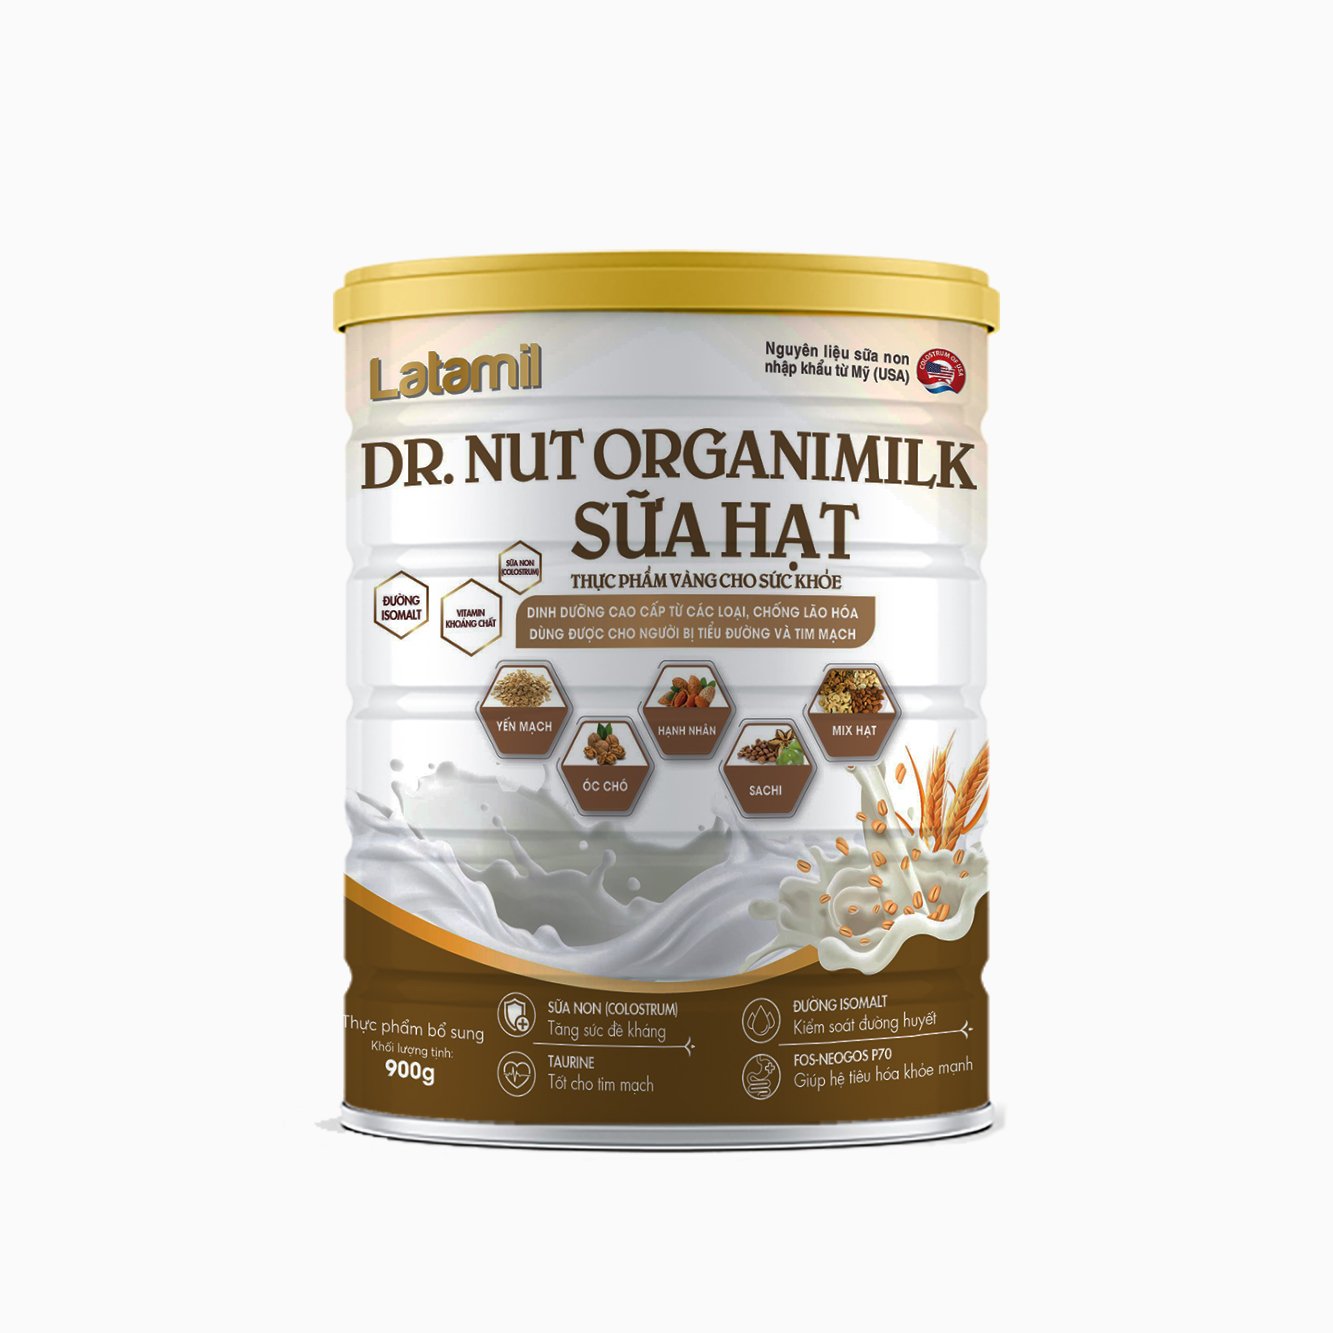 Latamil Dr. Nut Organimilk Sữa Hạt - Dinh Dưỡng Từ Các Loại Hạt